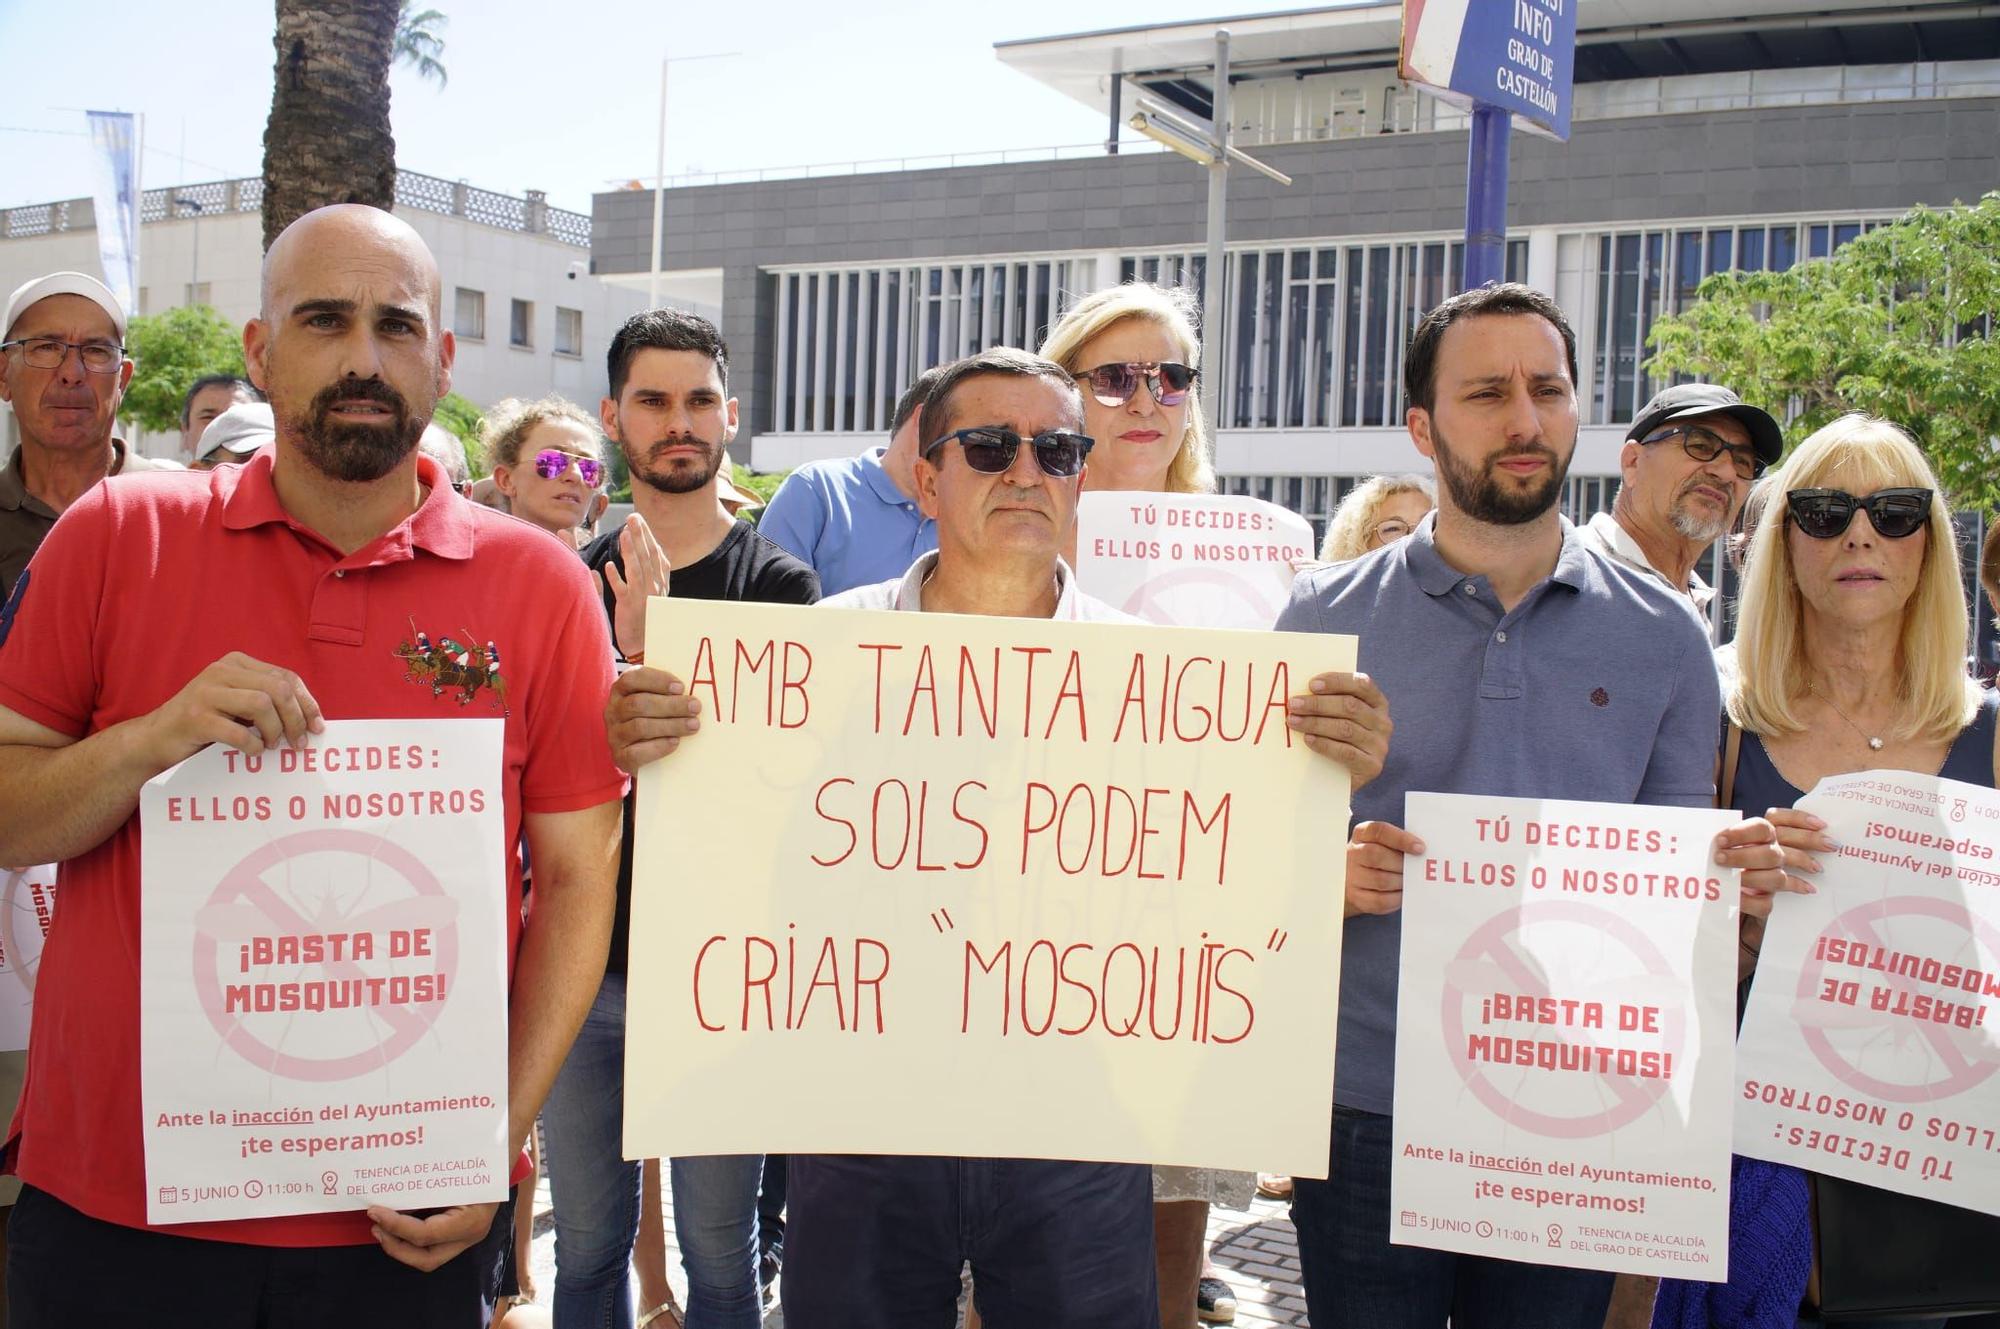 Galería: La protesta contra los mosquitos en el Grau